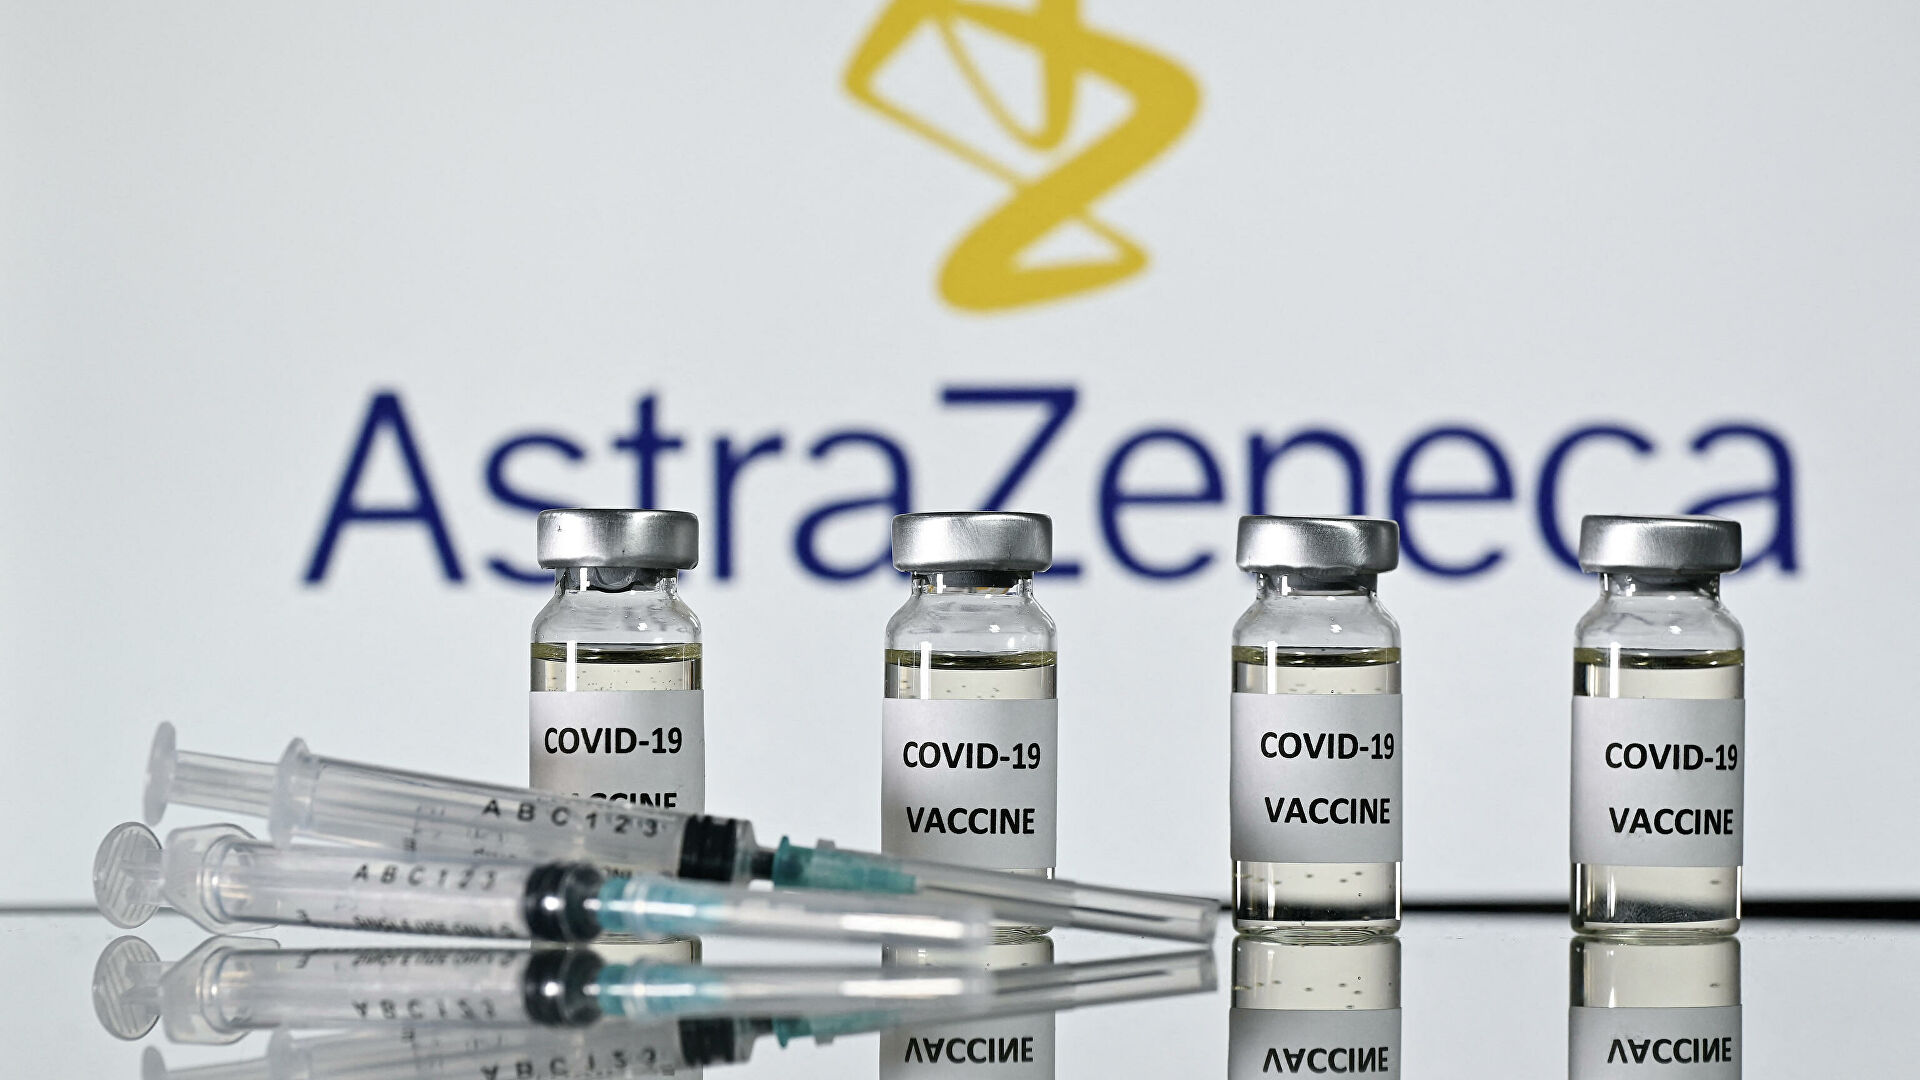 CША не планируют закупать вакцину от AstraZeneca